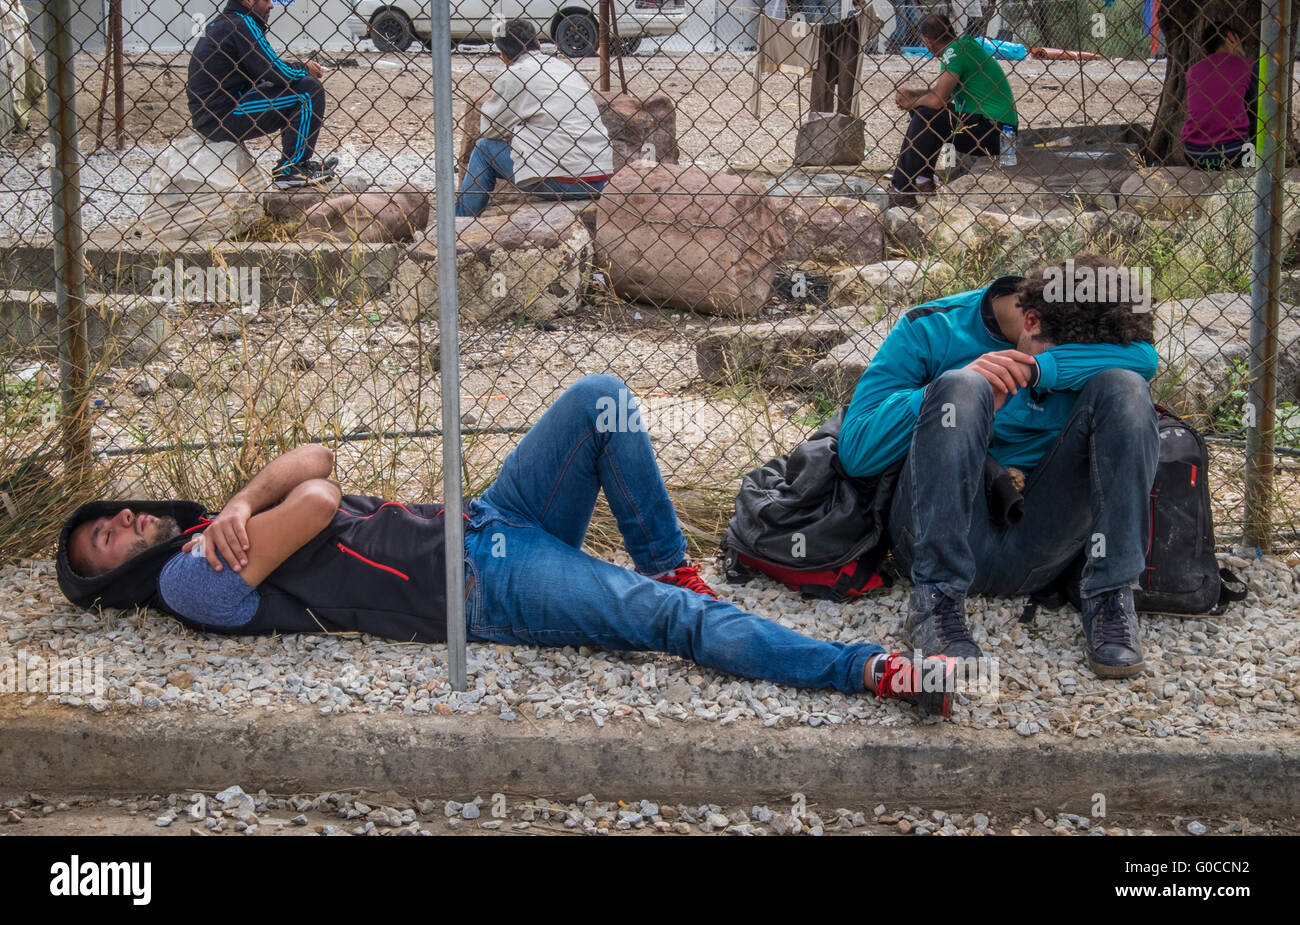 Dos hombres jóvenes refugiadas agotados desde Siria colapso a las puertas del campamento de refugiados de Kara Tepe en la isla griega de Lesbos Foto de stock